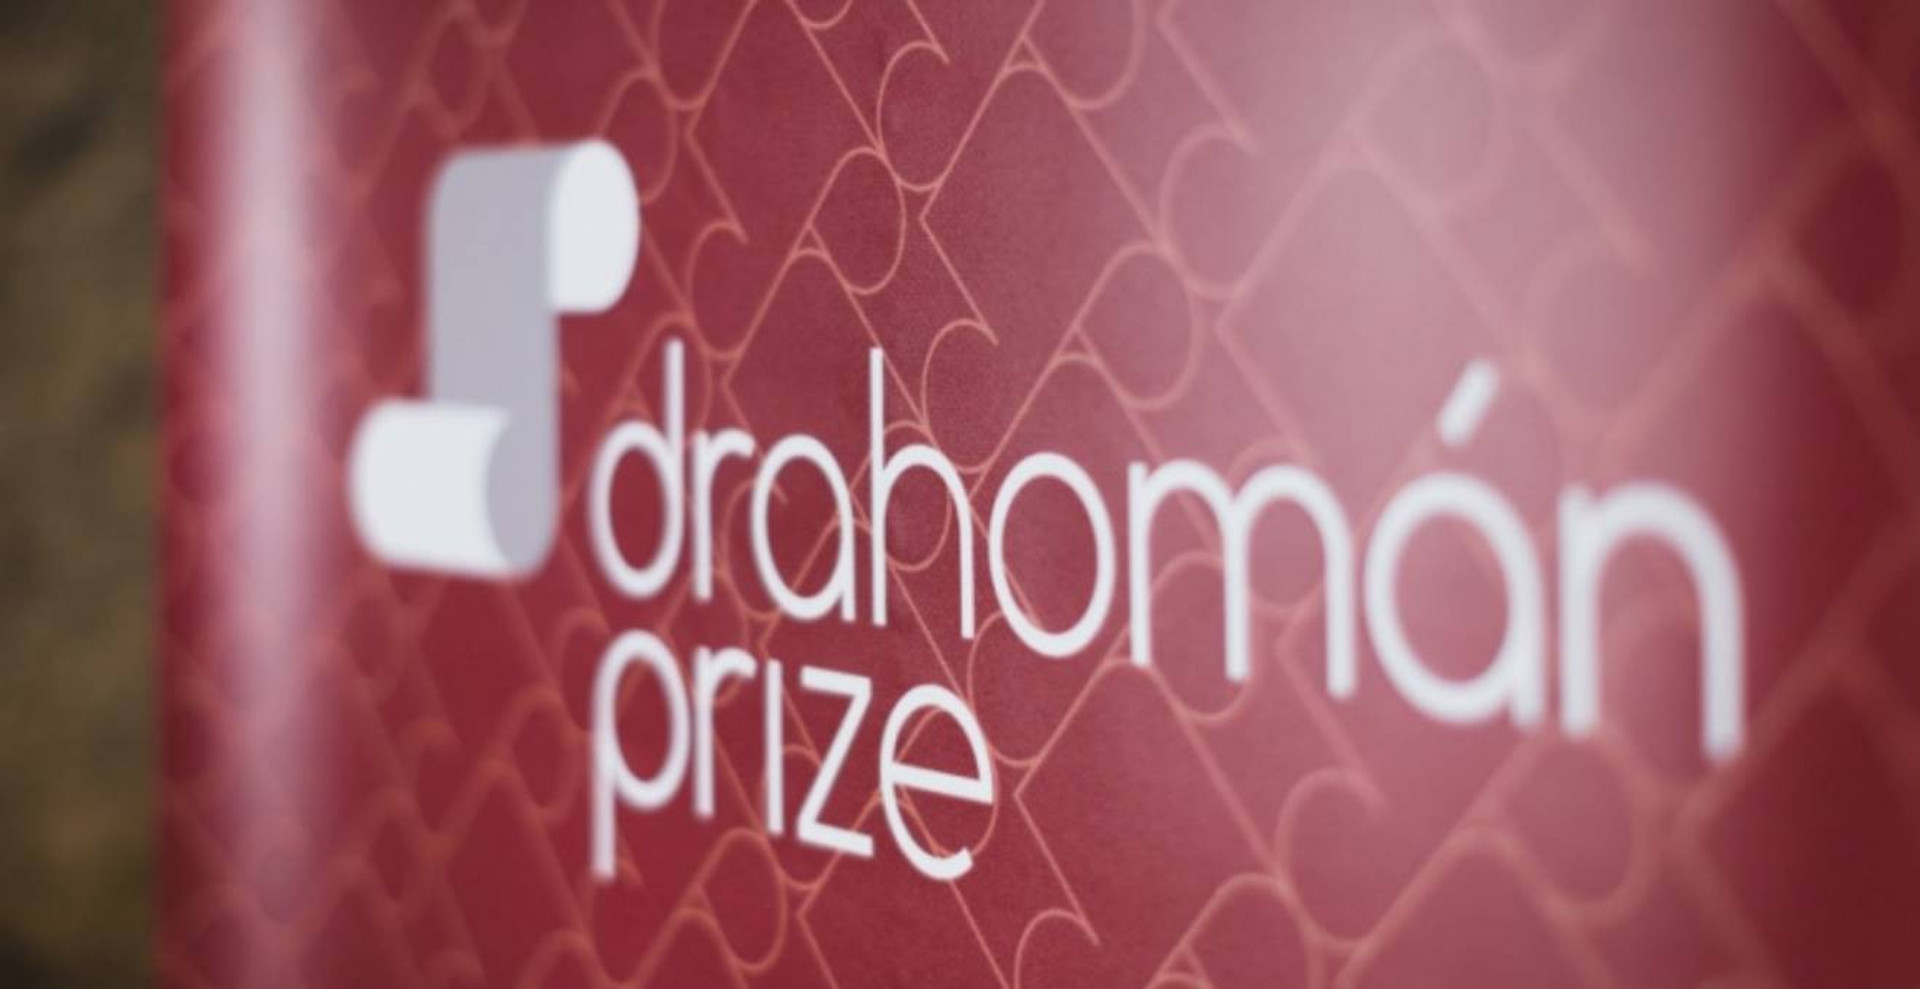 Drahomán Prize таки вручать цьогоріч. Коли, де і хто може отримати головну премію за переклади української літератури